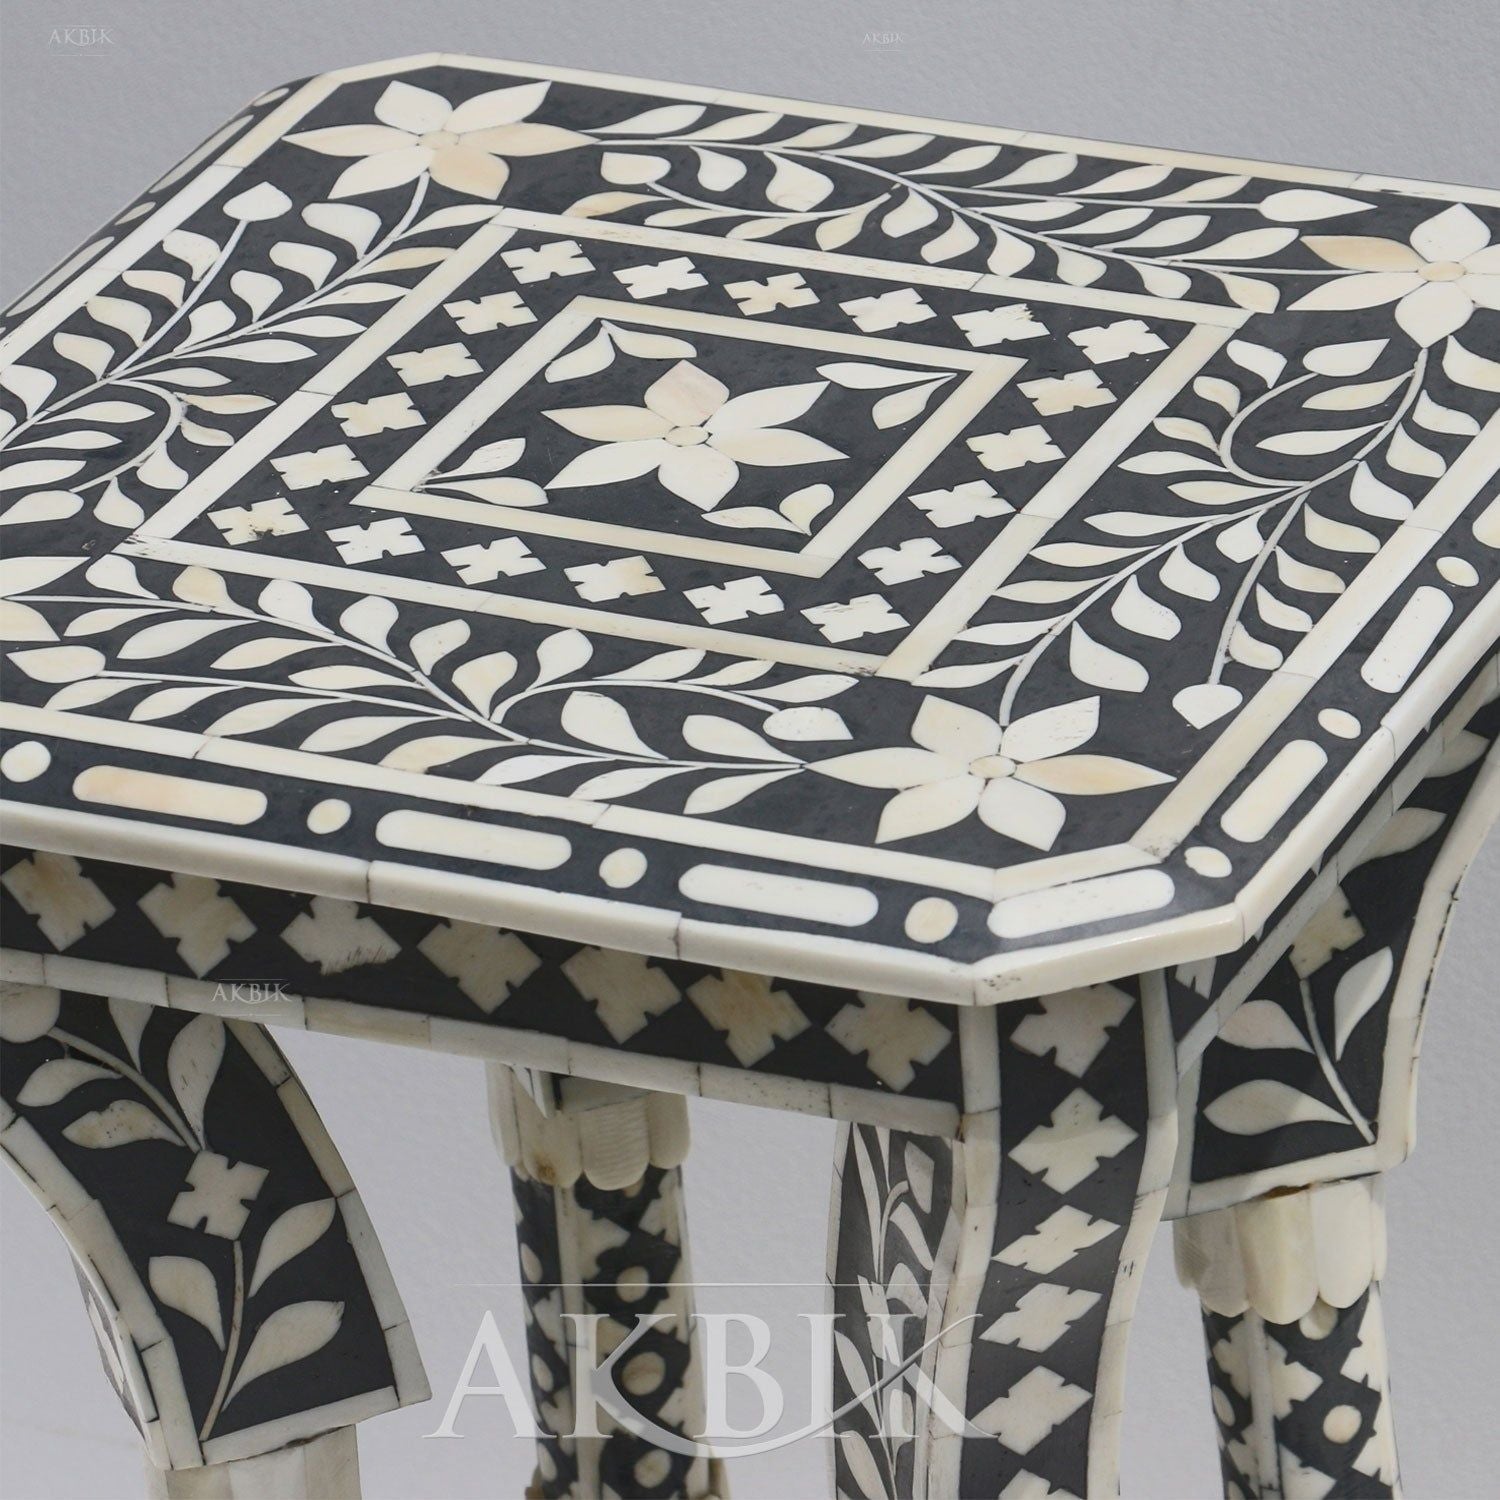 ADORATION SIDE TABLE - AKBIK Furniture & Design